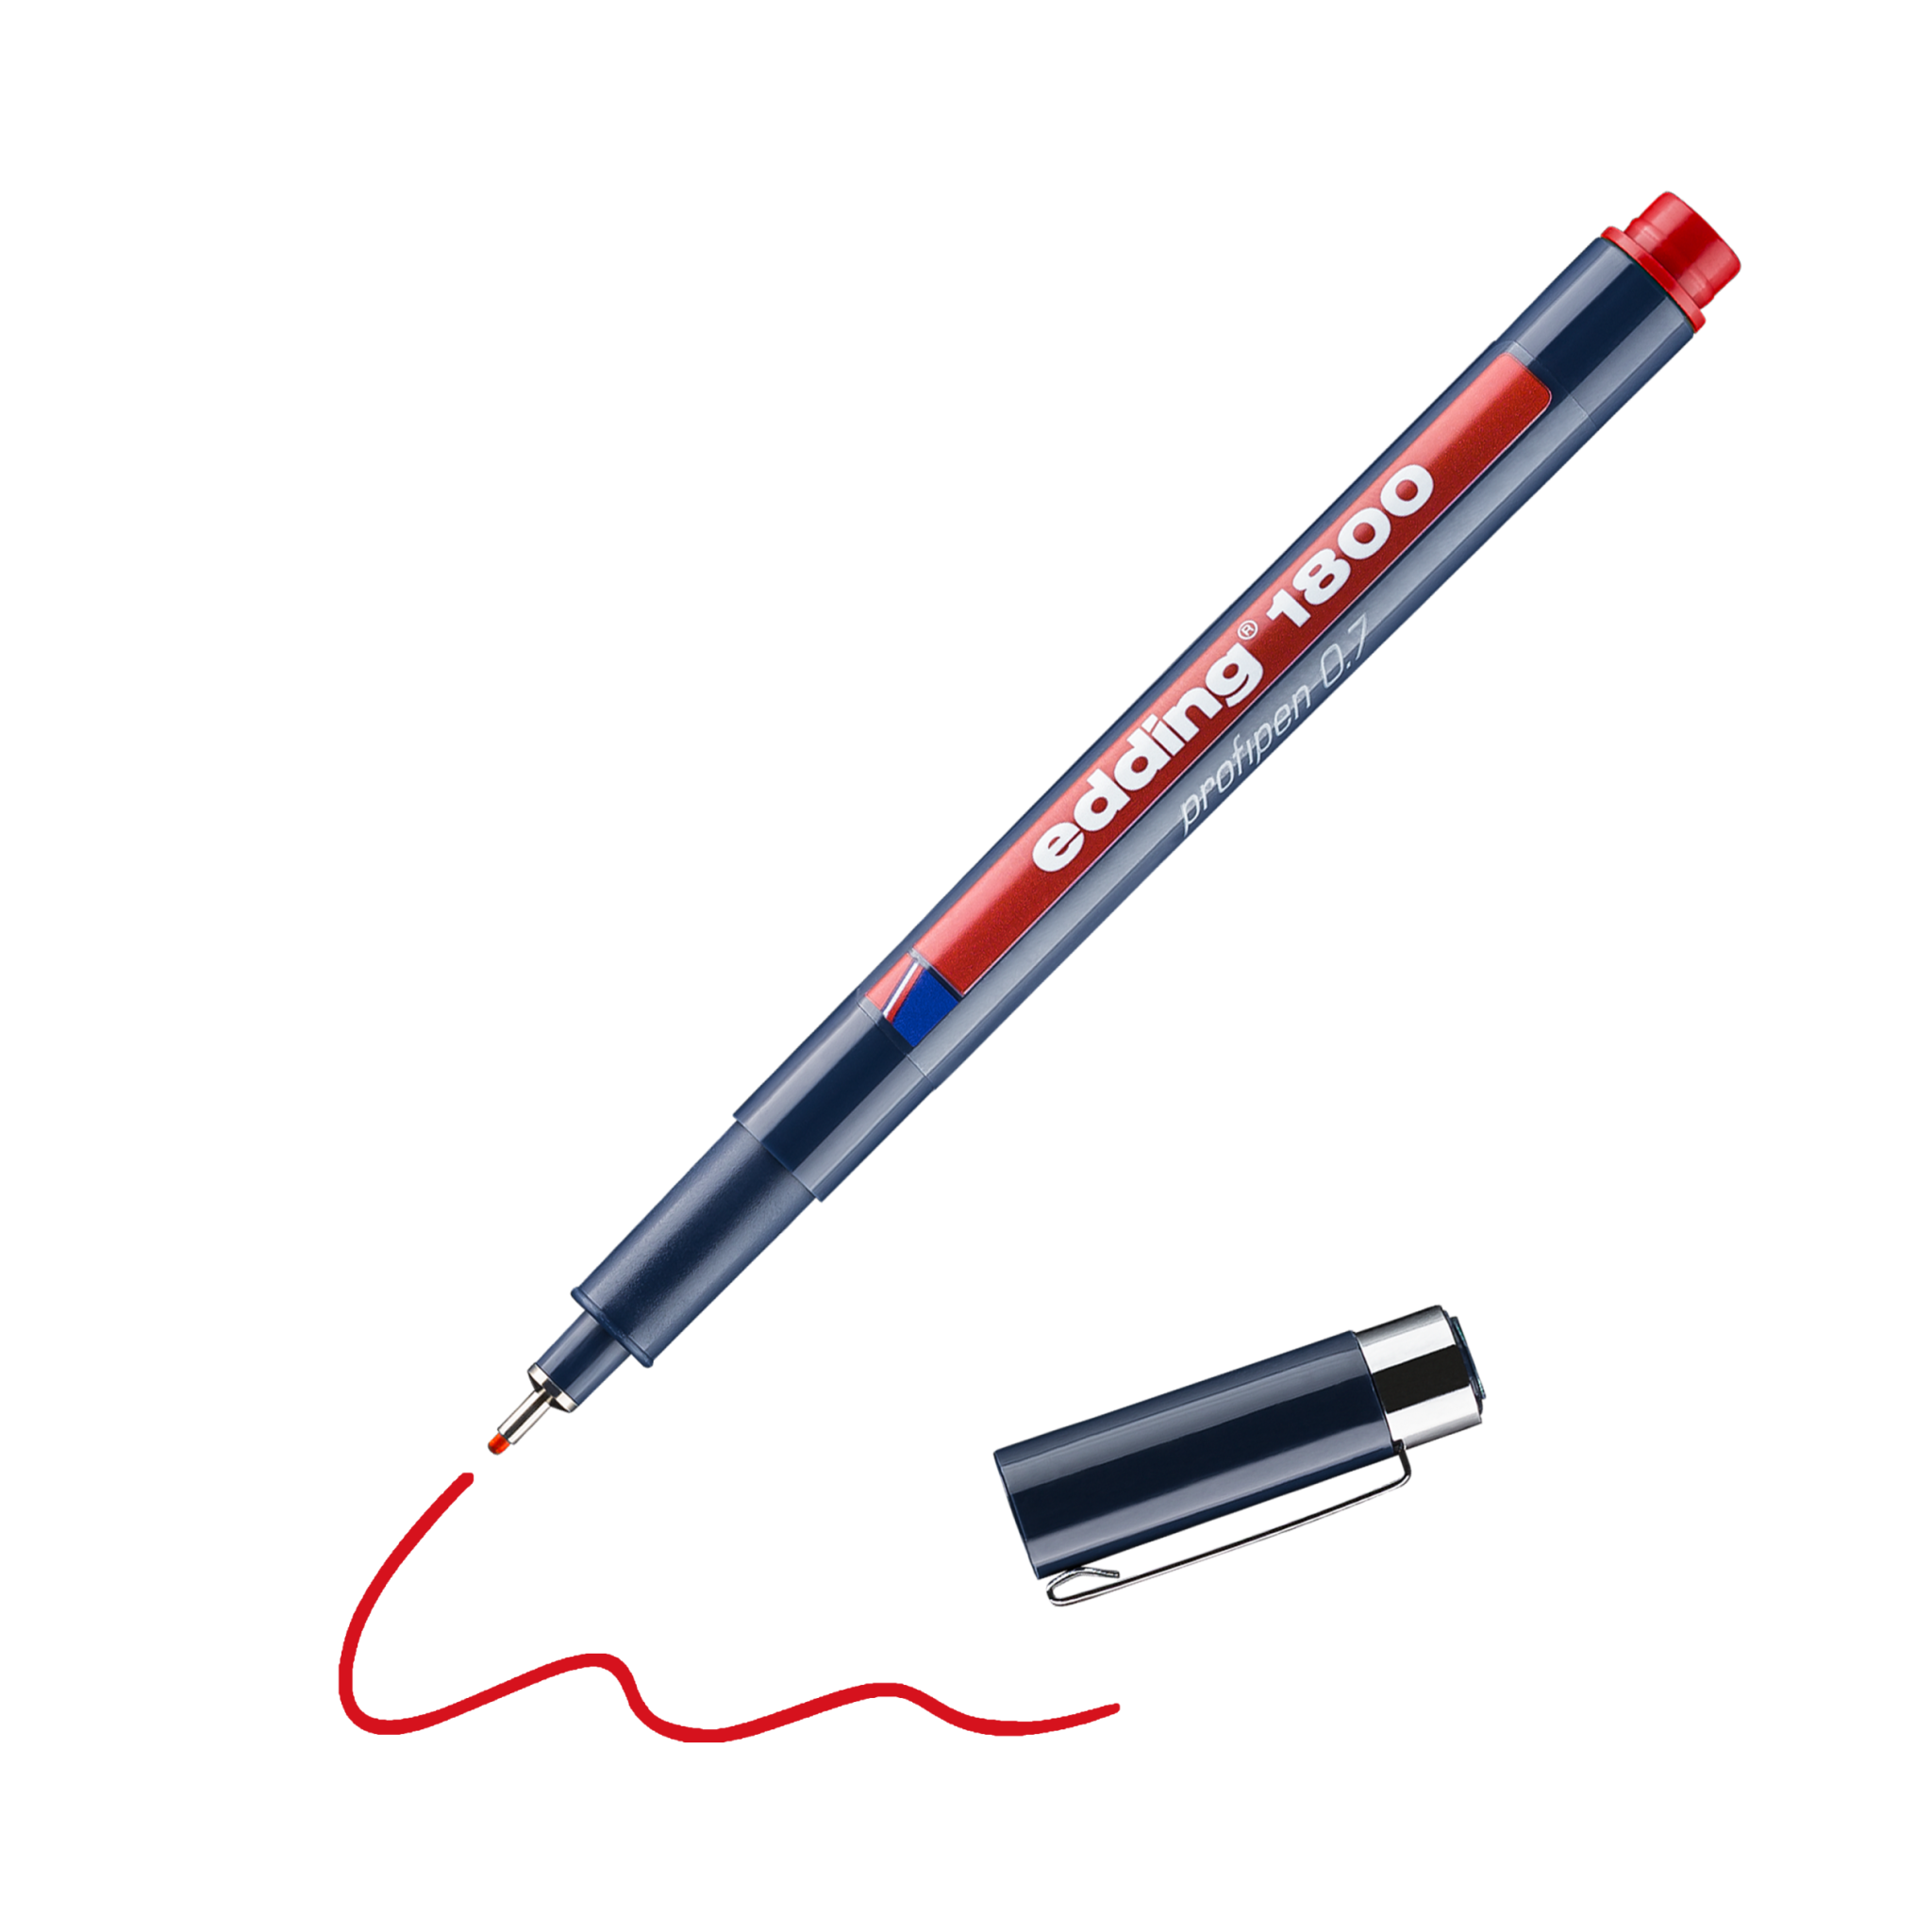 Ein schräg liegender roter edding 1800 Präzisionsfeinschreiber mit abgenommener Kappe und darunter gezeichneter roter Linie vor schwarzem Hintergrund.